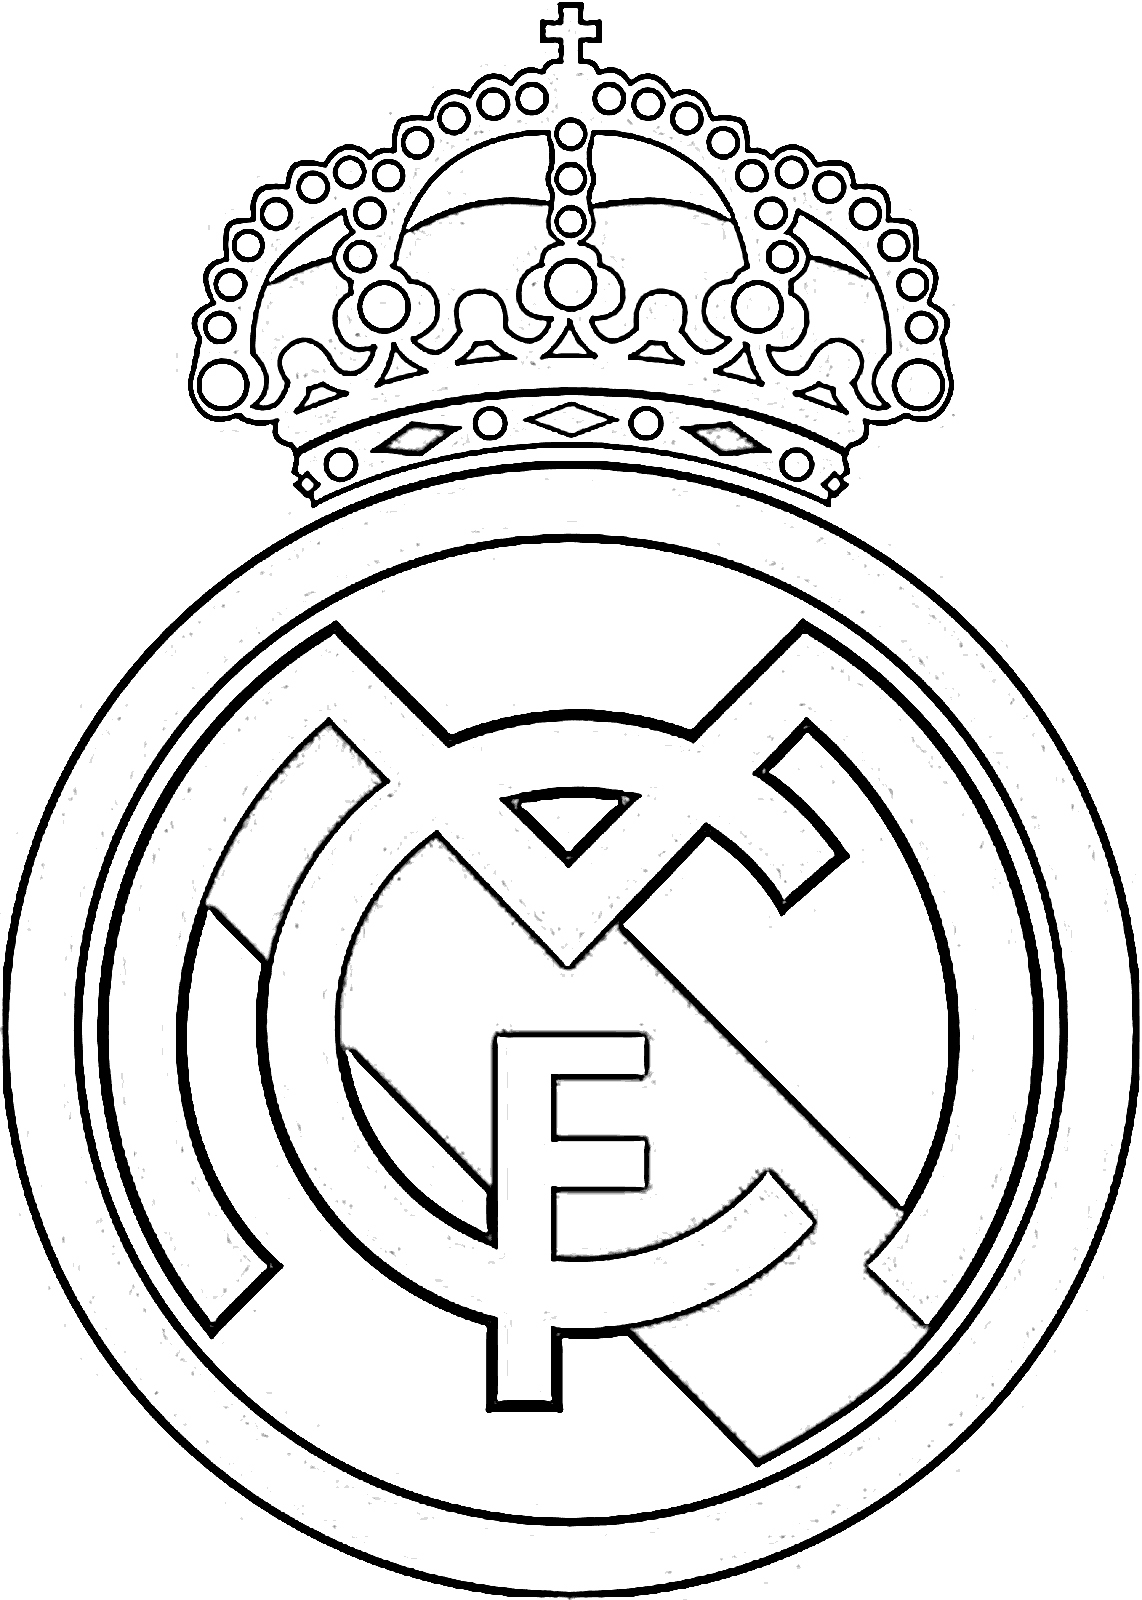 Раскраски с логотипами футбольных клубов (все для бесплатной печати)